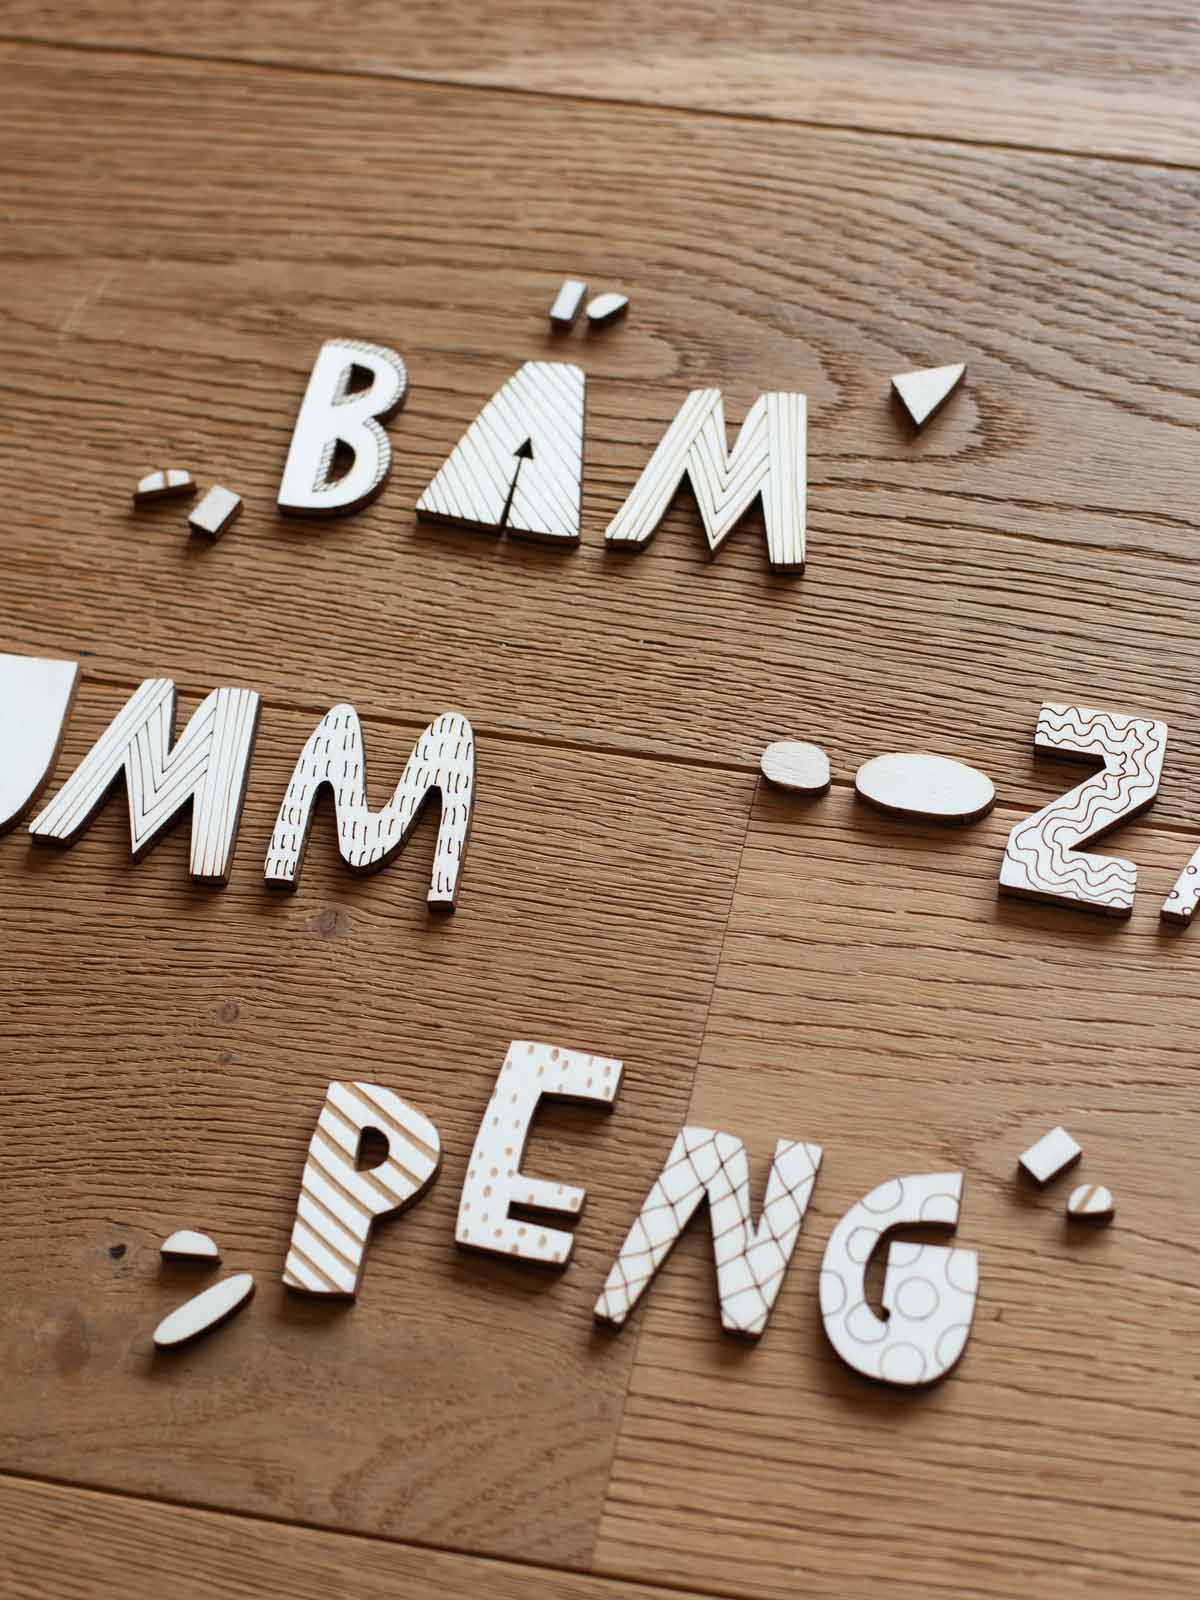 auf einem Holzboden liegen die Wörter Bäm, Bumm, Zack peng mit Holzbuchstaben in natürlicher Optik und verschiedenen eingelaserten Mustern